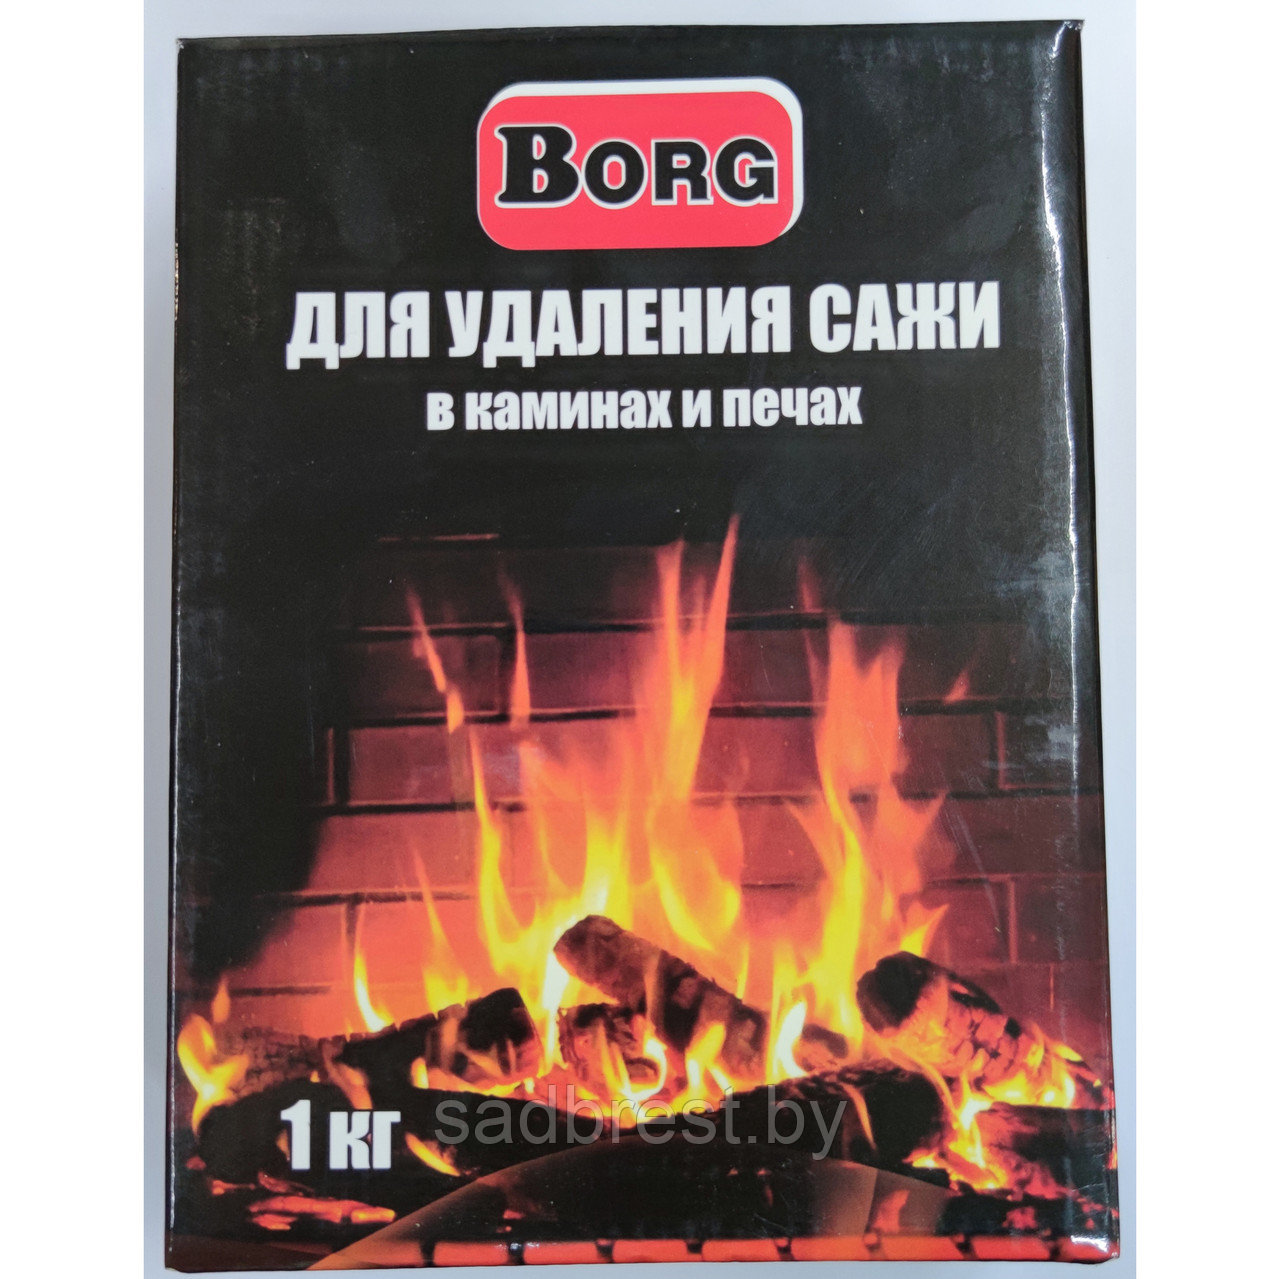 Порошок для очистки дымохода от сажи Borg Борг 1 кг